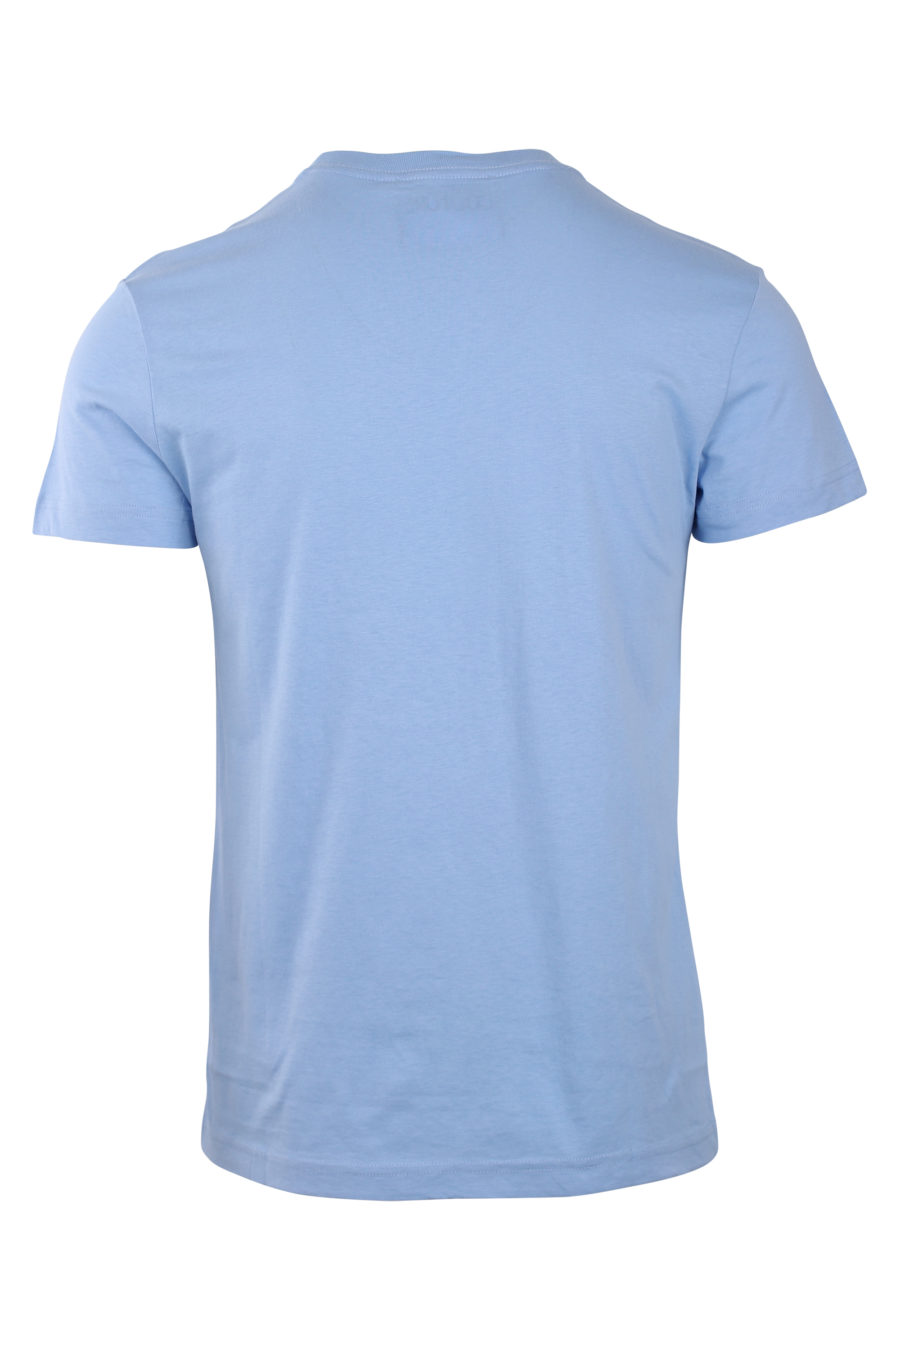 Camiseta azul cielo con logo redondo tornasol - IMG 0764